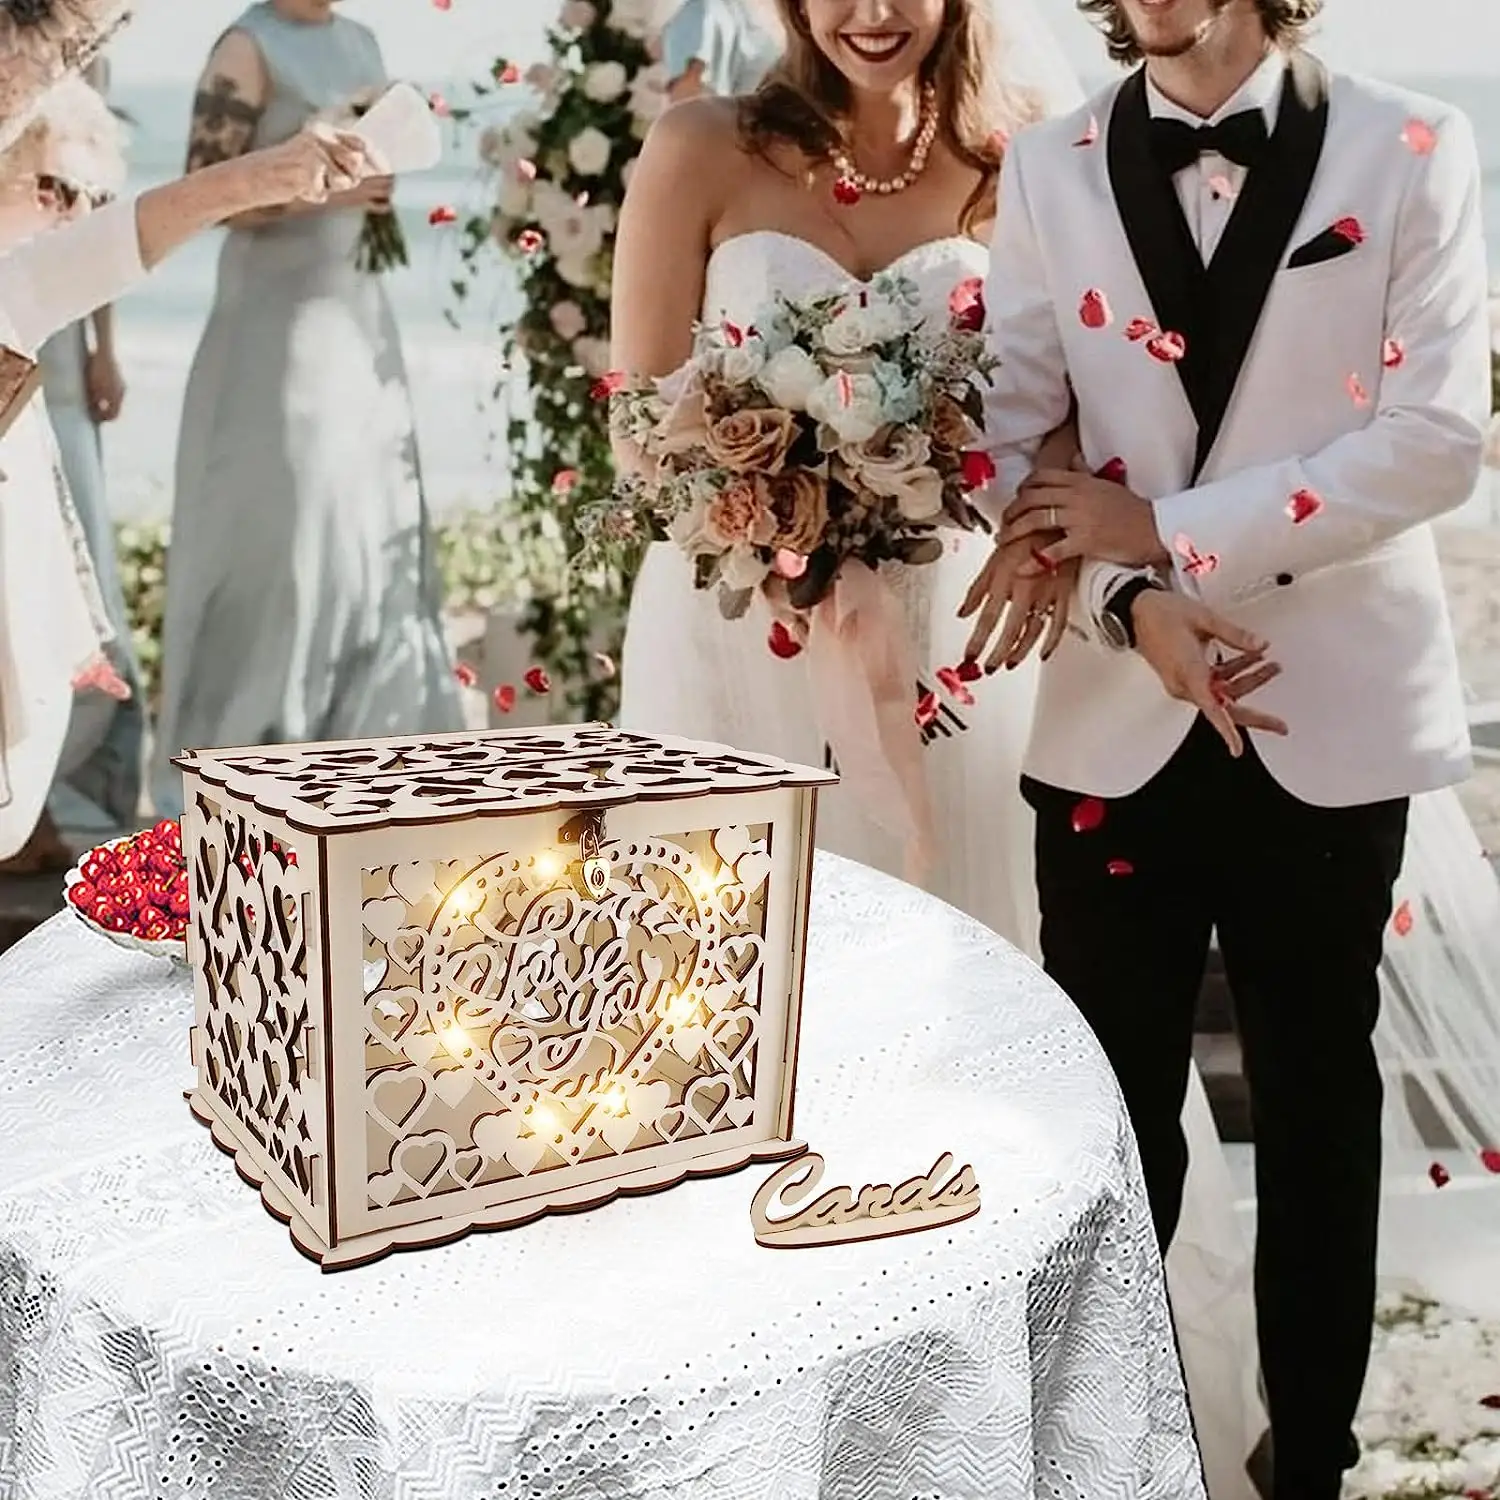 กล่องการ์ดแต่งงานพร้อมล็อครูปหัวใจสีทองและไฟนางฟ้าตกแต่งด้วยไม้แบบกลวงสำหรับต้อนรับ